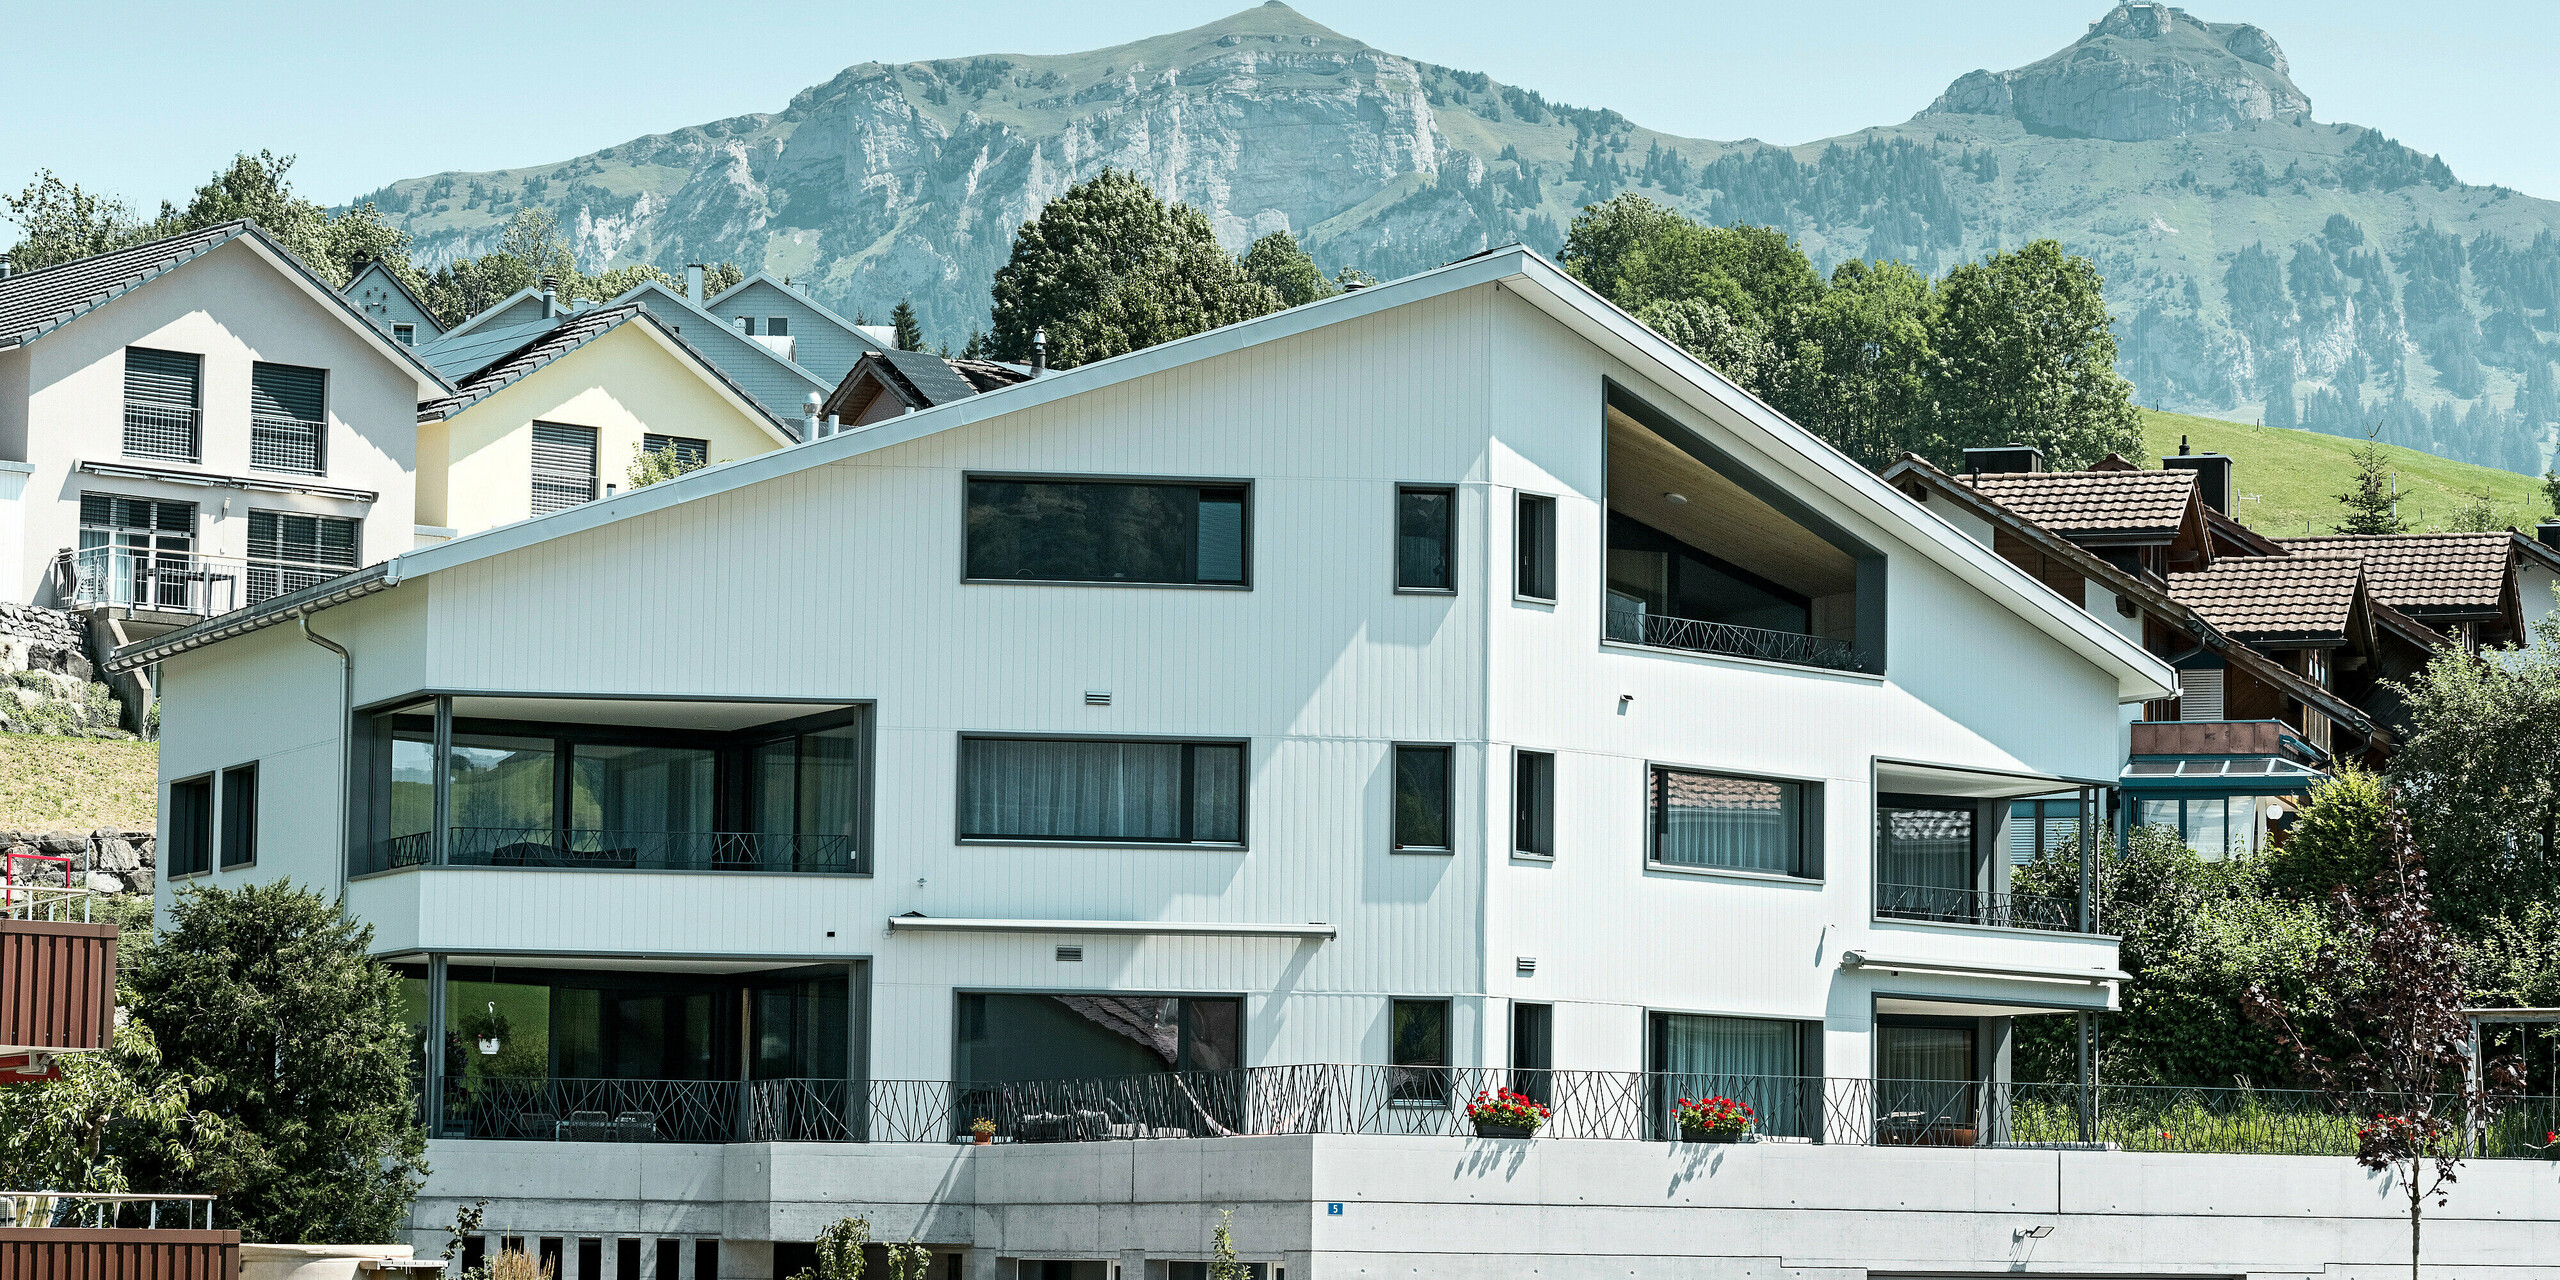 Čelní pohled na bytový dům opláštěný fasádními lamelami Siding v barvě P.10 prefa bílé